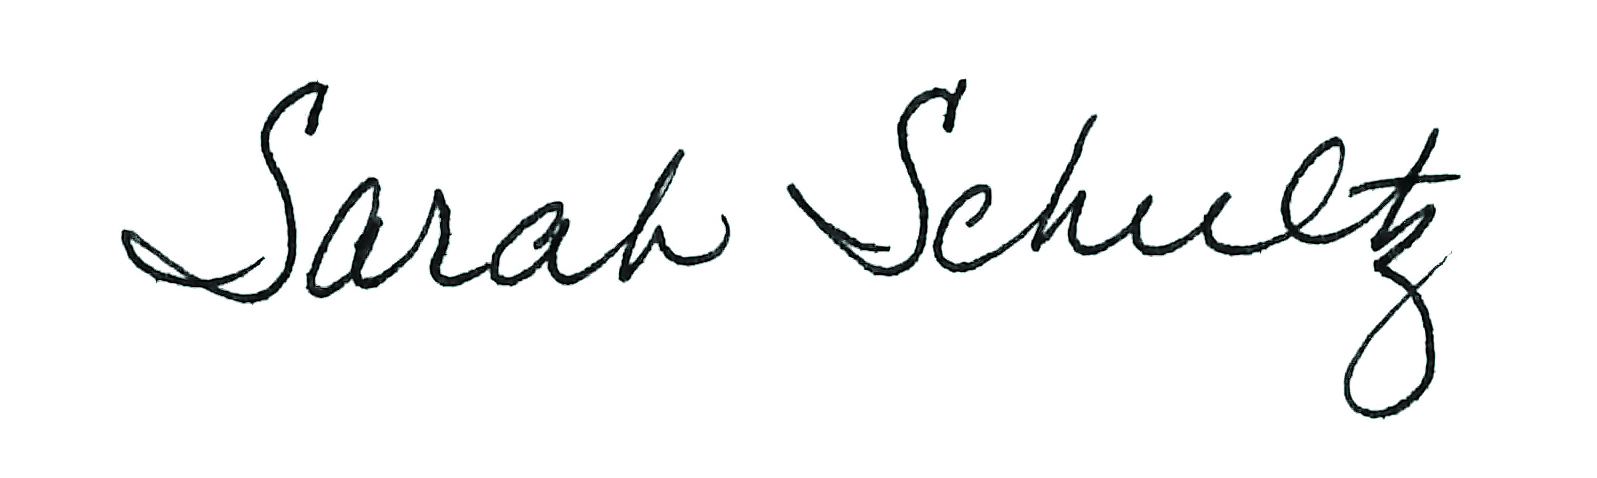 sarah schultz signature